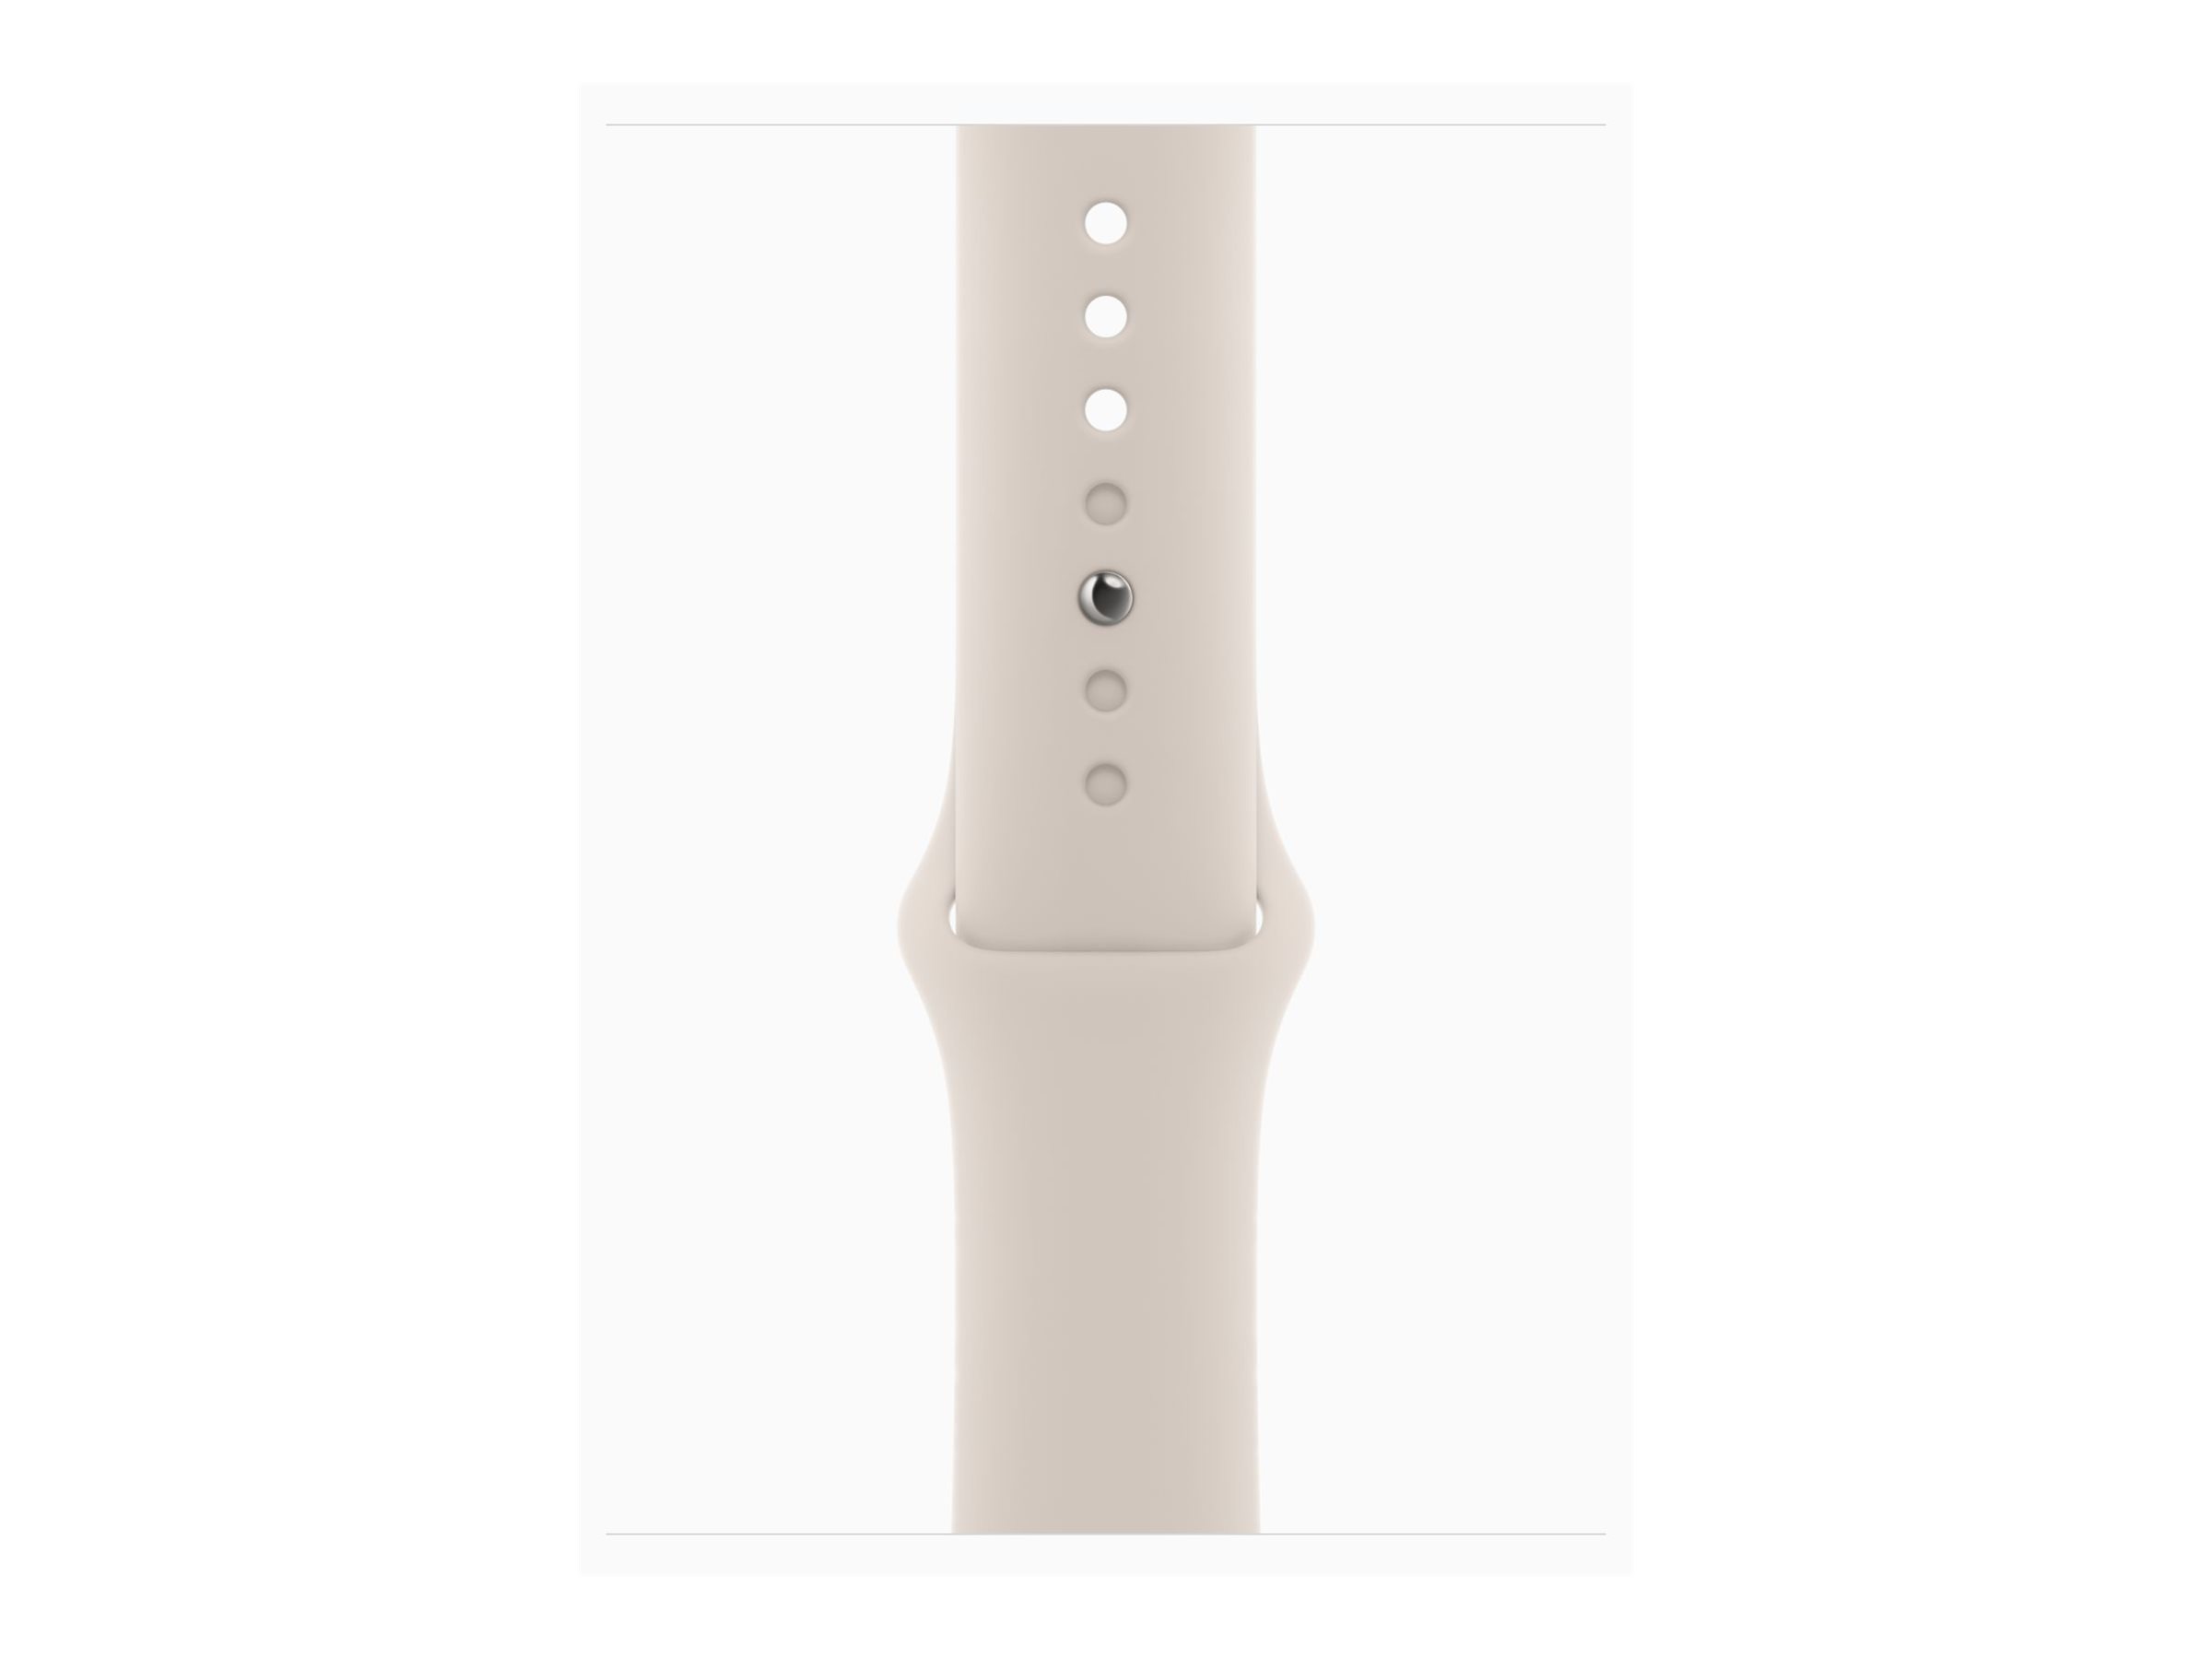 Apple Watch SE (GPS + Cellular) - 2e génération - 44 mm - aluminium droit - montre intelligente avec bande sport - fluoroélastomère - droit - taille du bracelet : S/M - 32 Go - Wi-Fi, LTE, Bluetooth - 4G - 33 g - MRGU3QF/A - Montres intelligentes